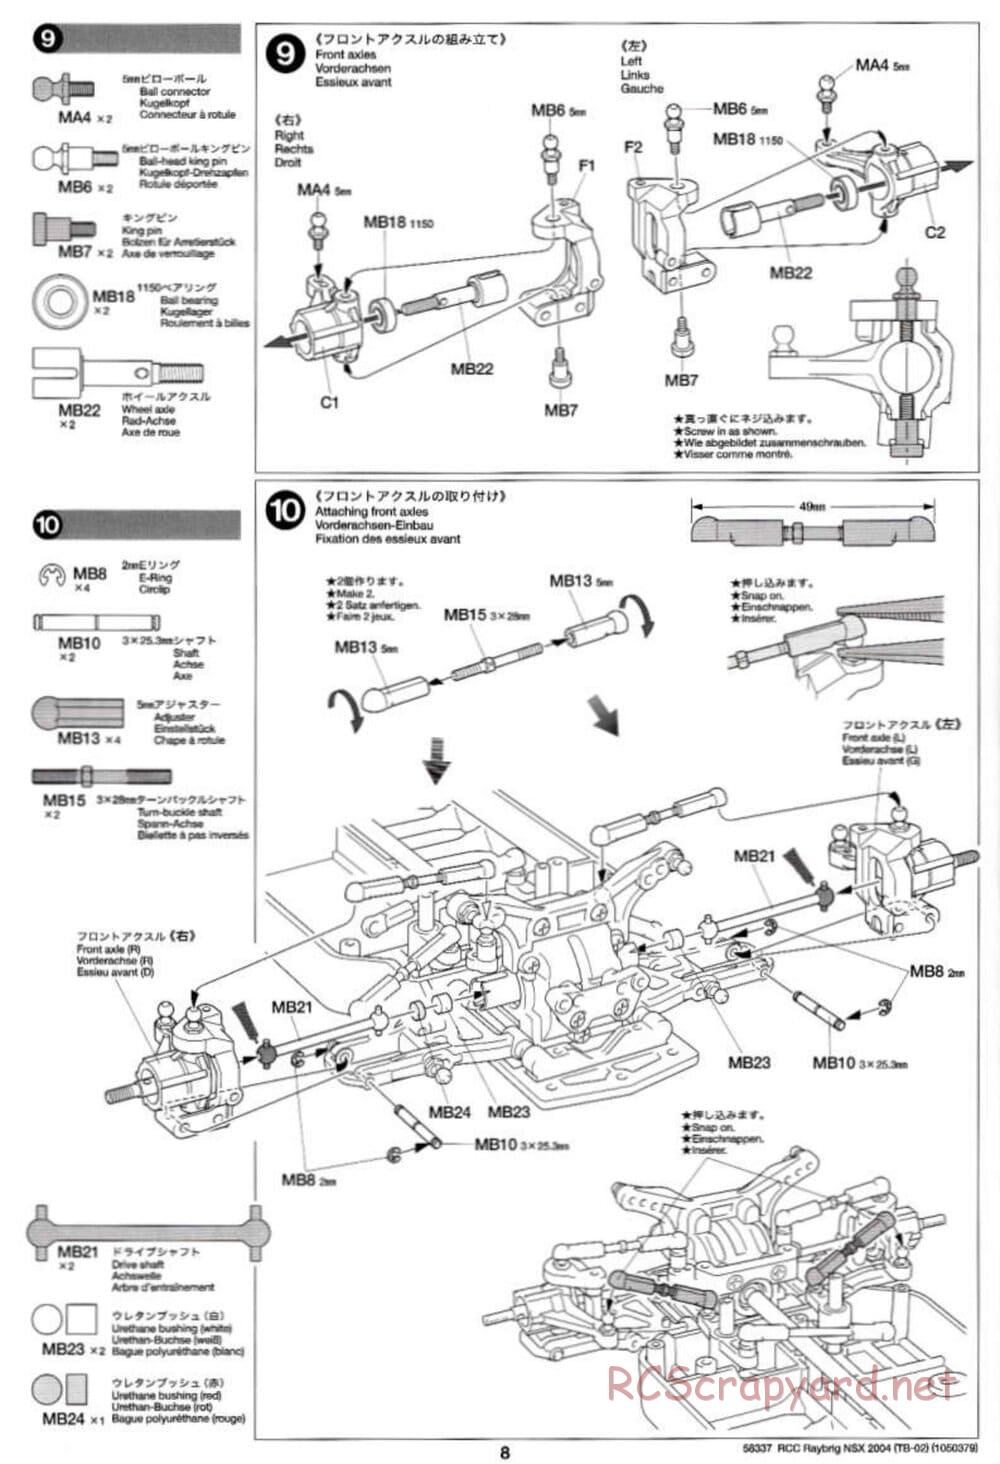 Tamiya - Raybrig NSX 2004 - TB-02 Chassis - Manual - Page 8